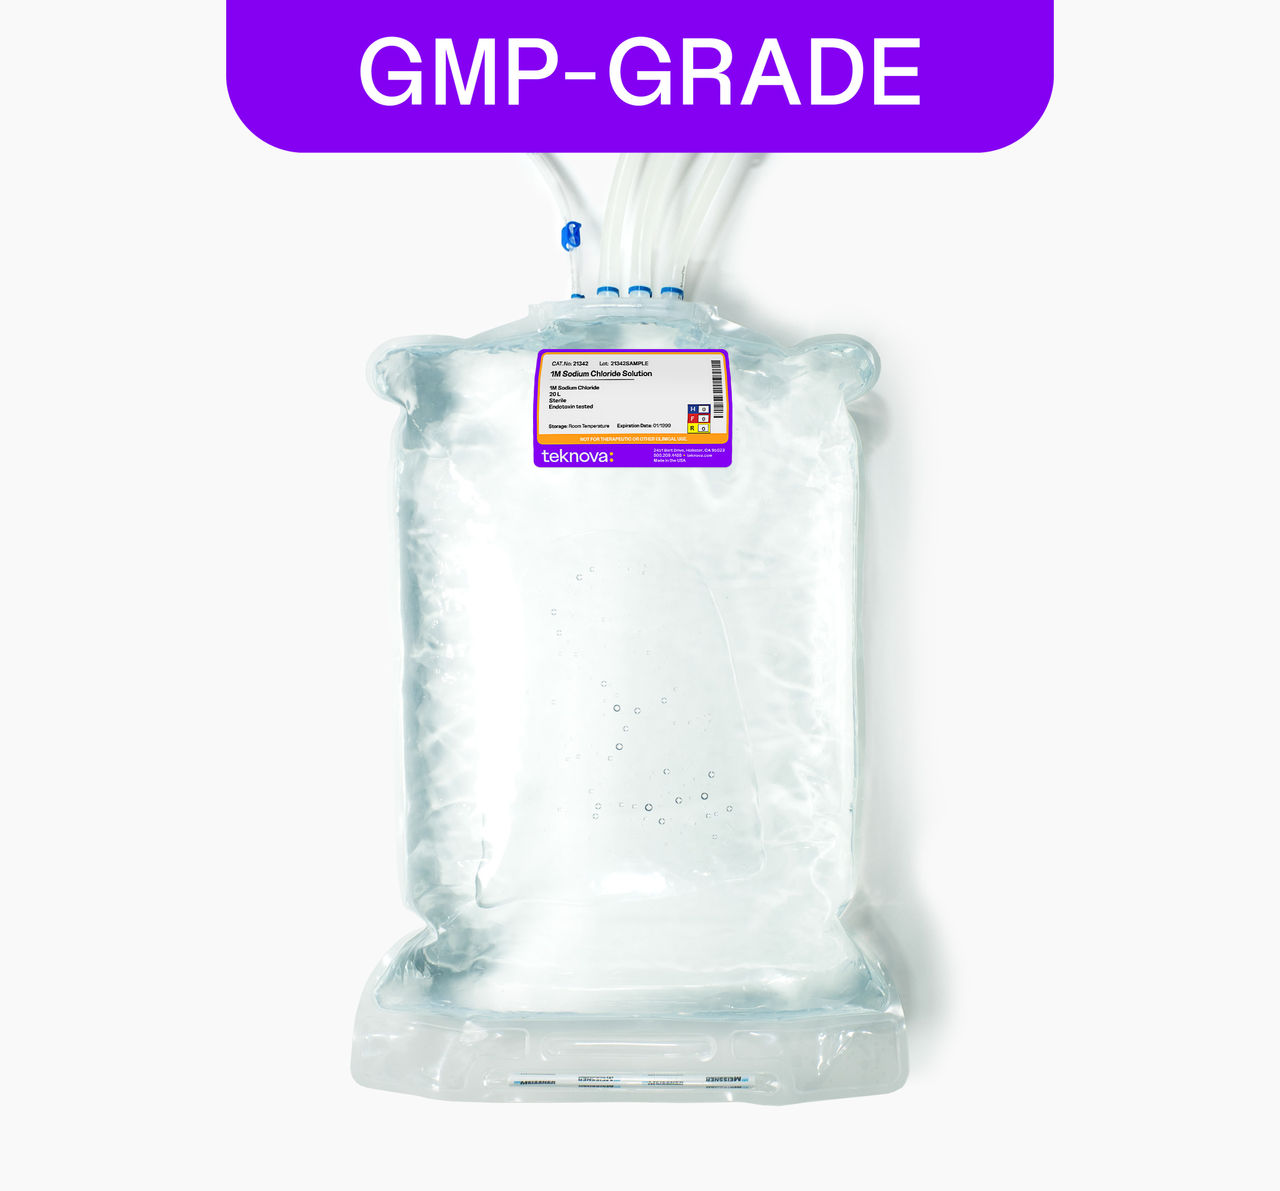 1M Sodium Chloride Solution, 20L bag, GMP-grade